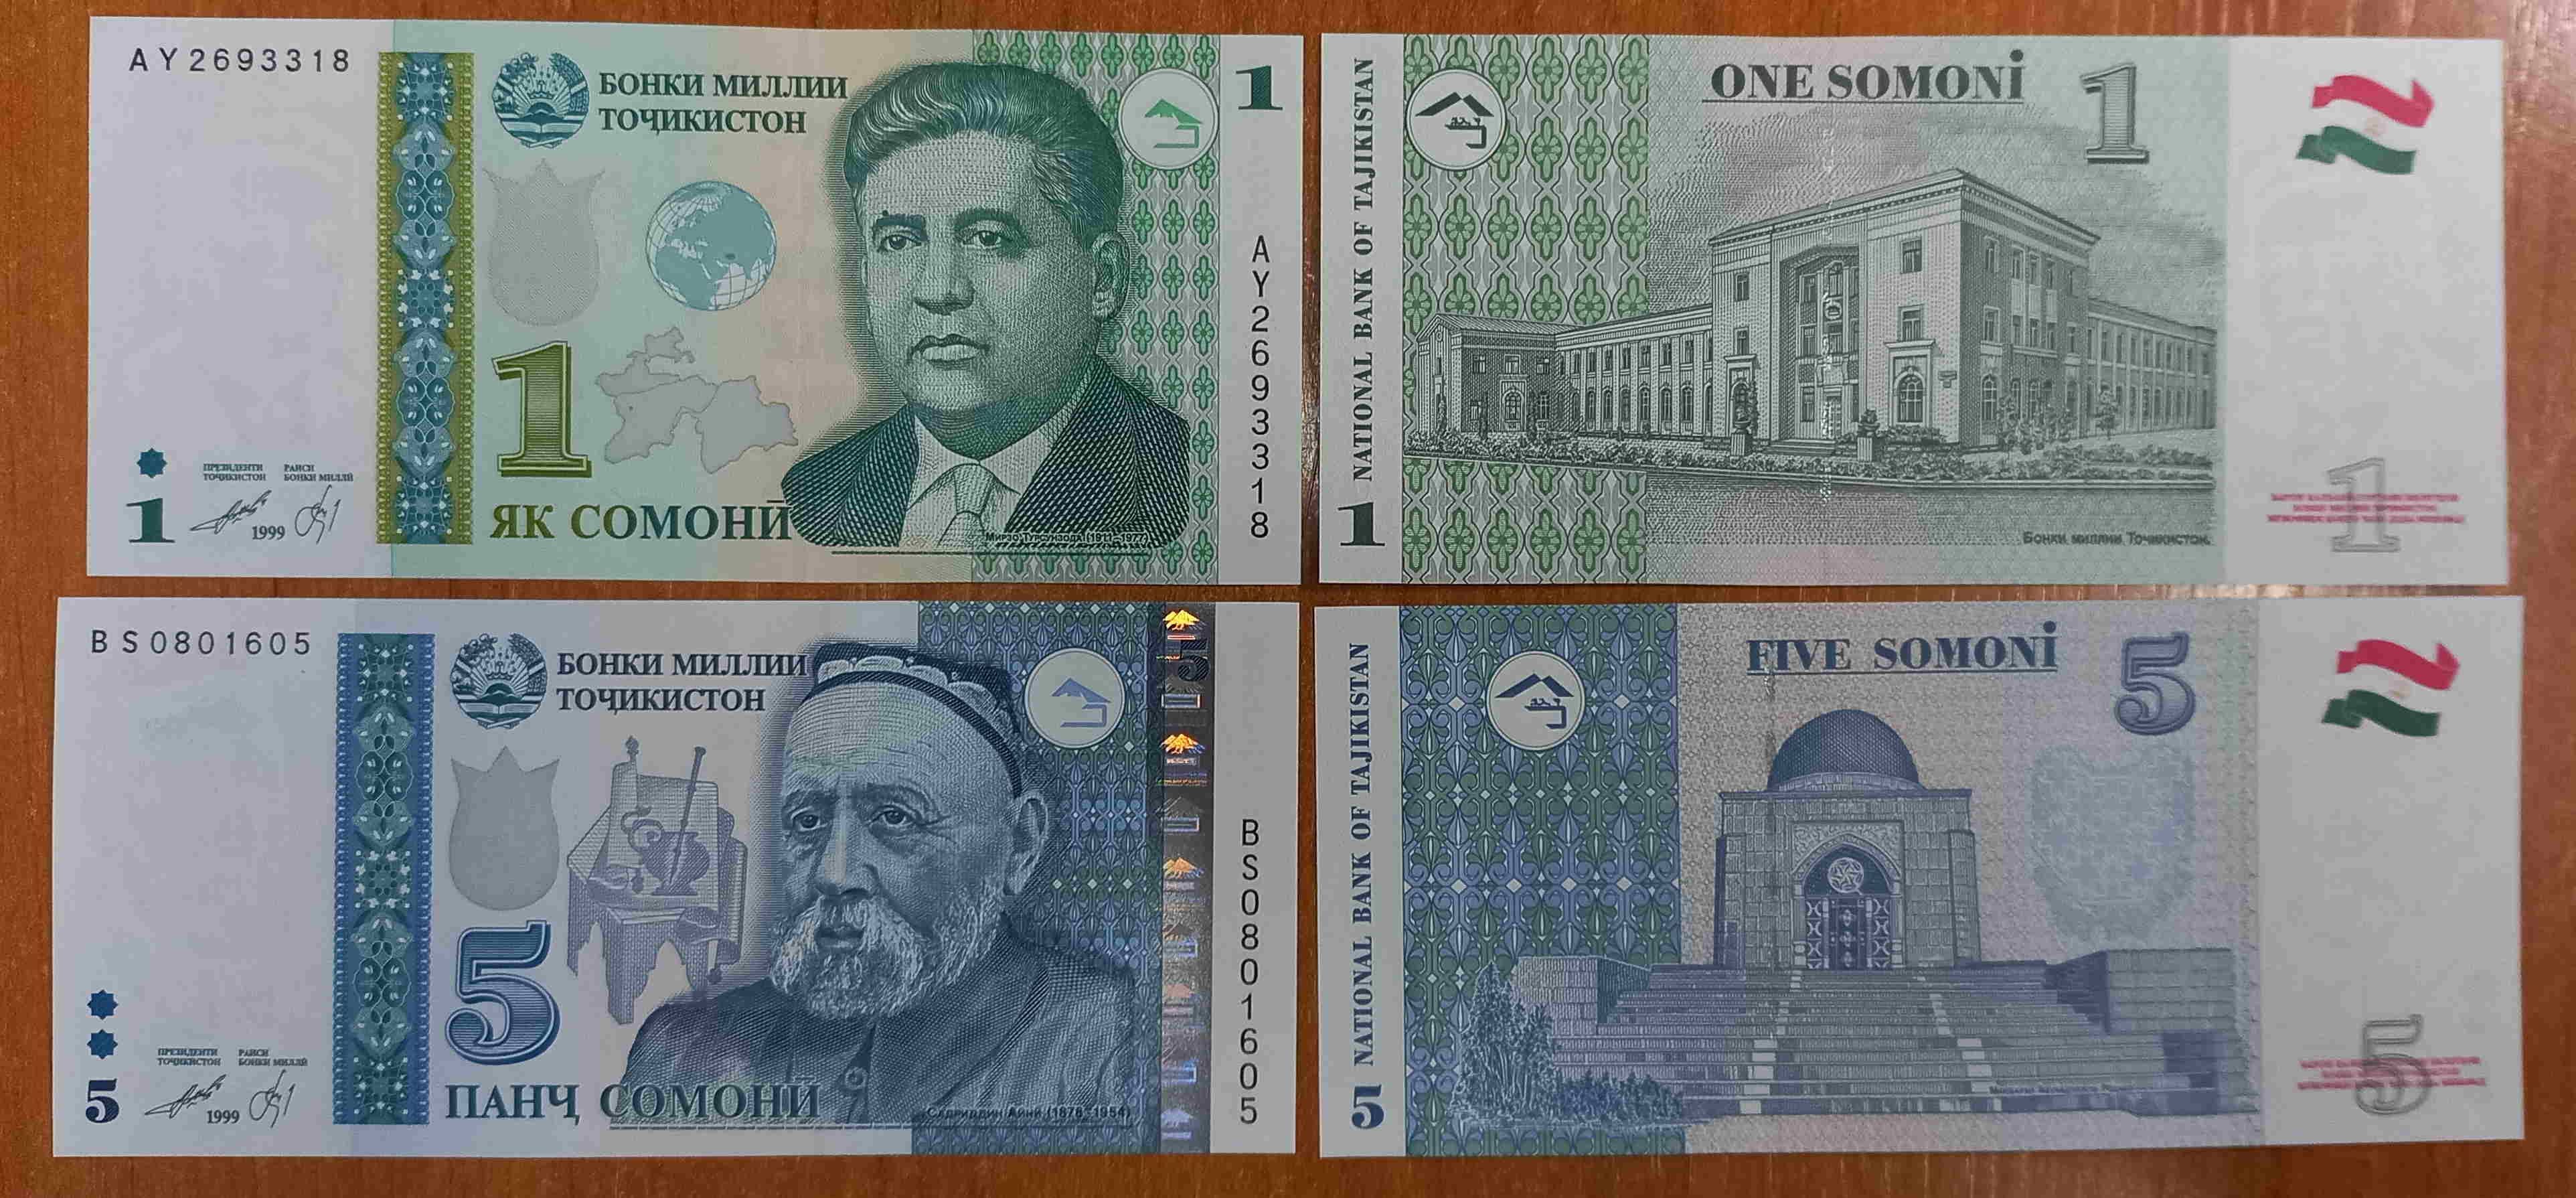 200 сомони в рублях. Купюры Таджикистана. 1000 Сомони Таджикистан. Купюры Таджикистана 1000 Сомони. Денежные знаки Таджикистана.